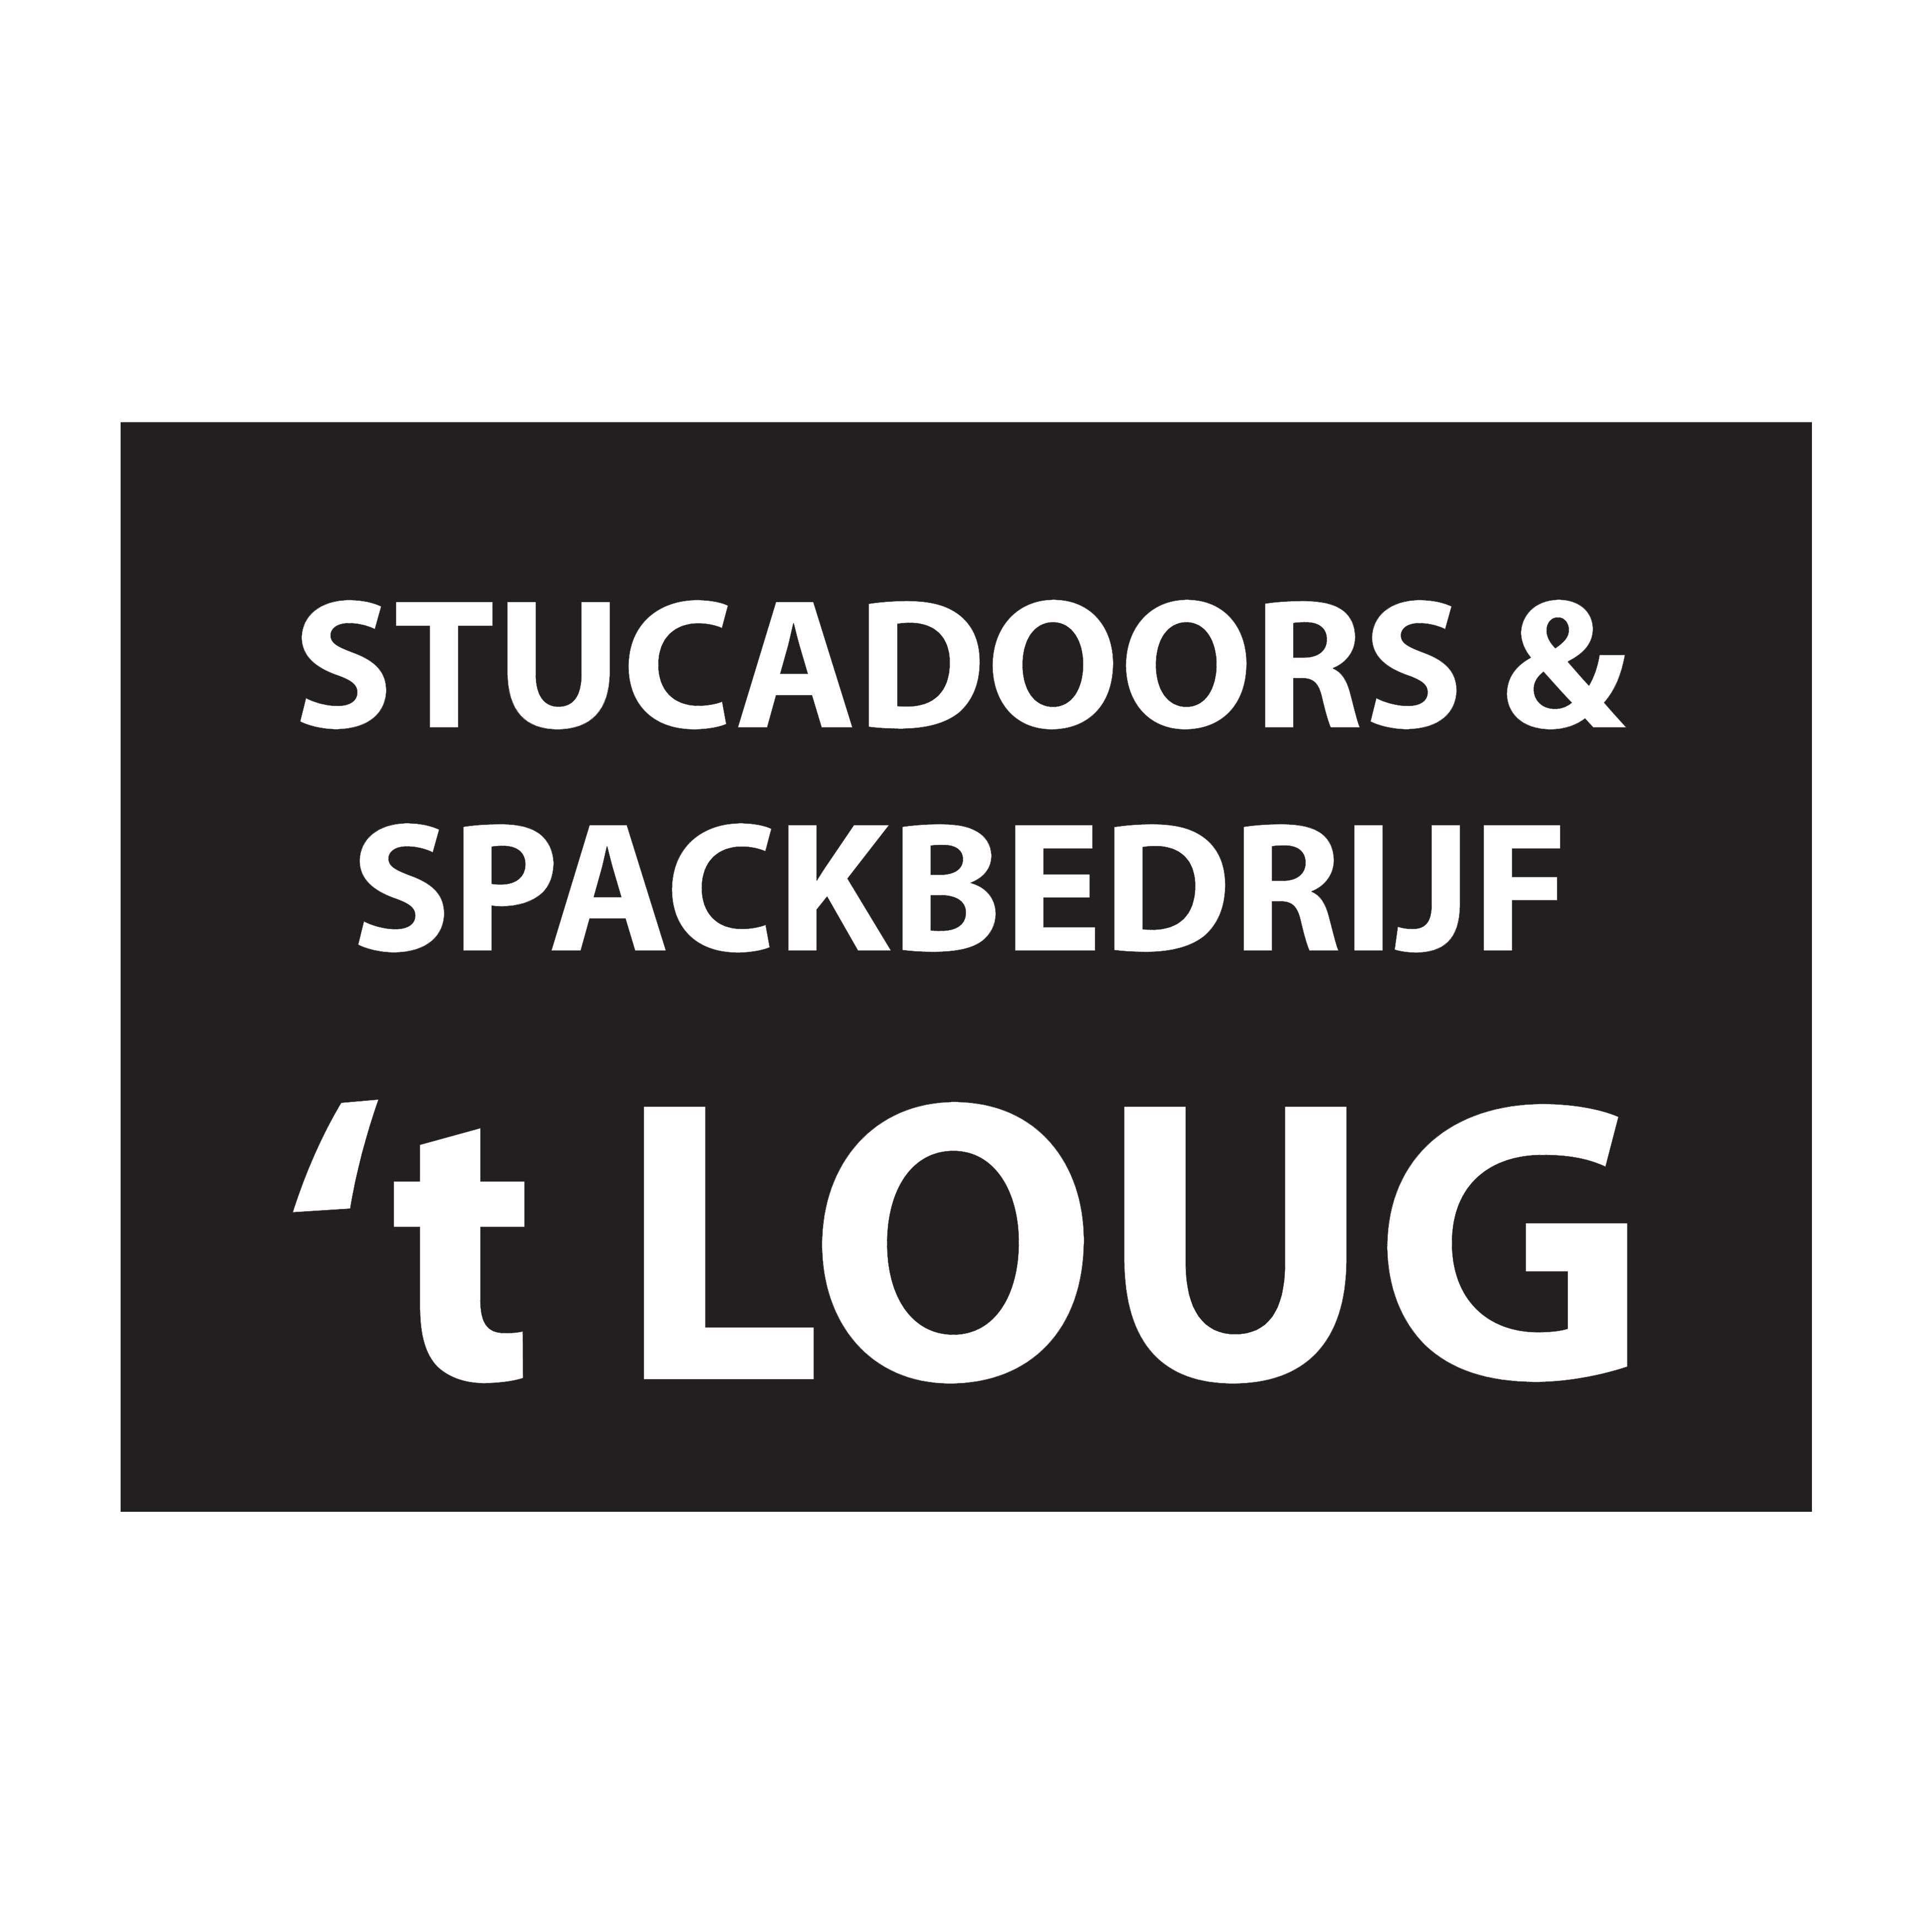 Stucadoors & Spackbedrijf 't Loug Logo